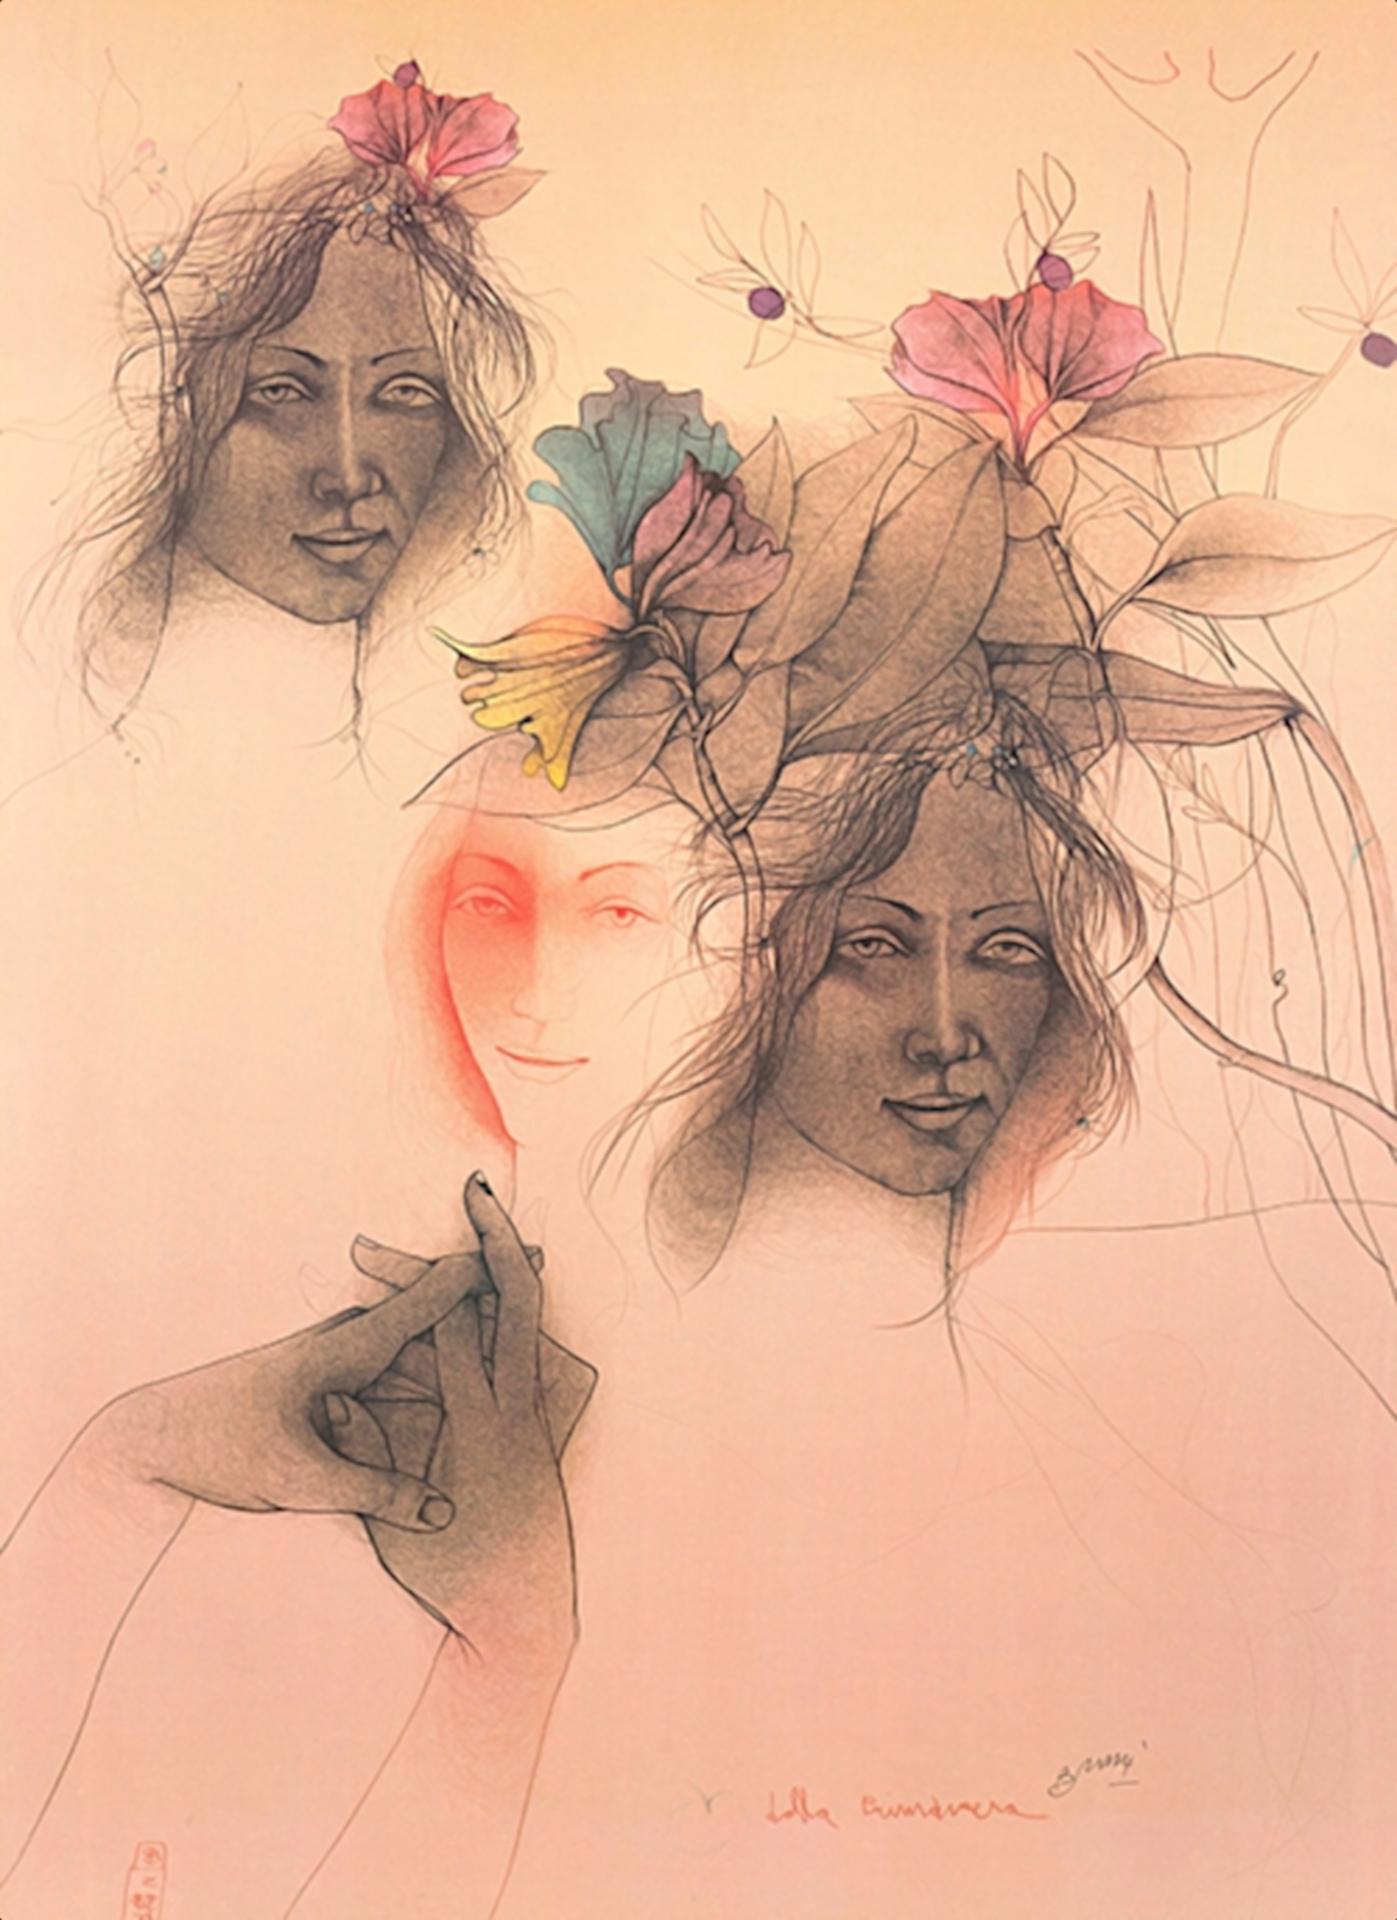 Bruno Bruni - "Delle Primavera" - color offset lithograph